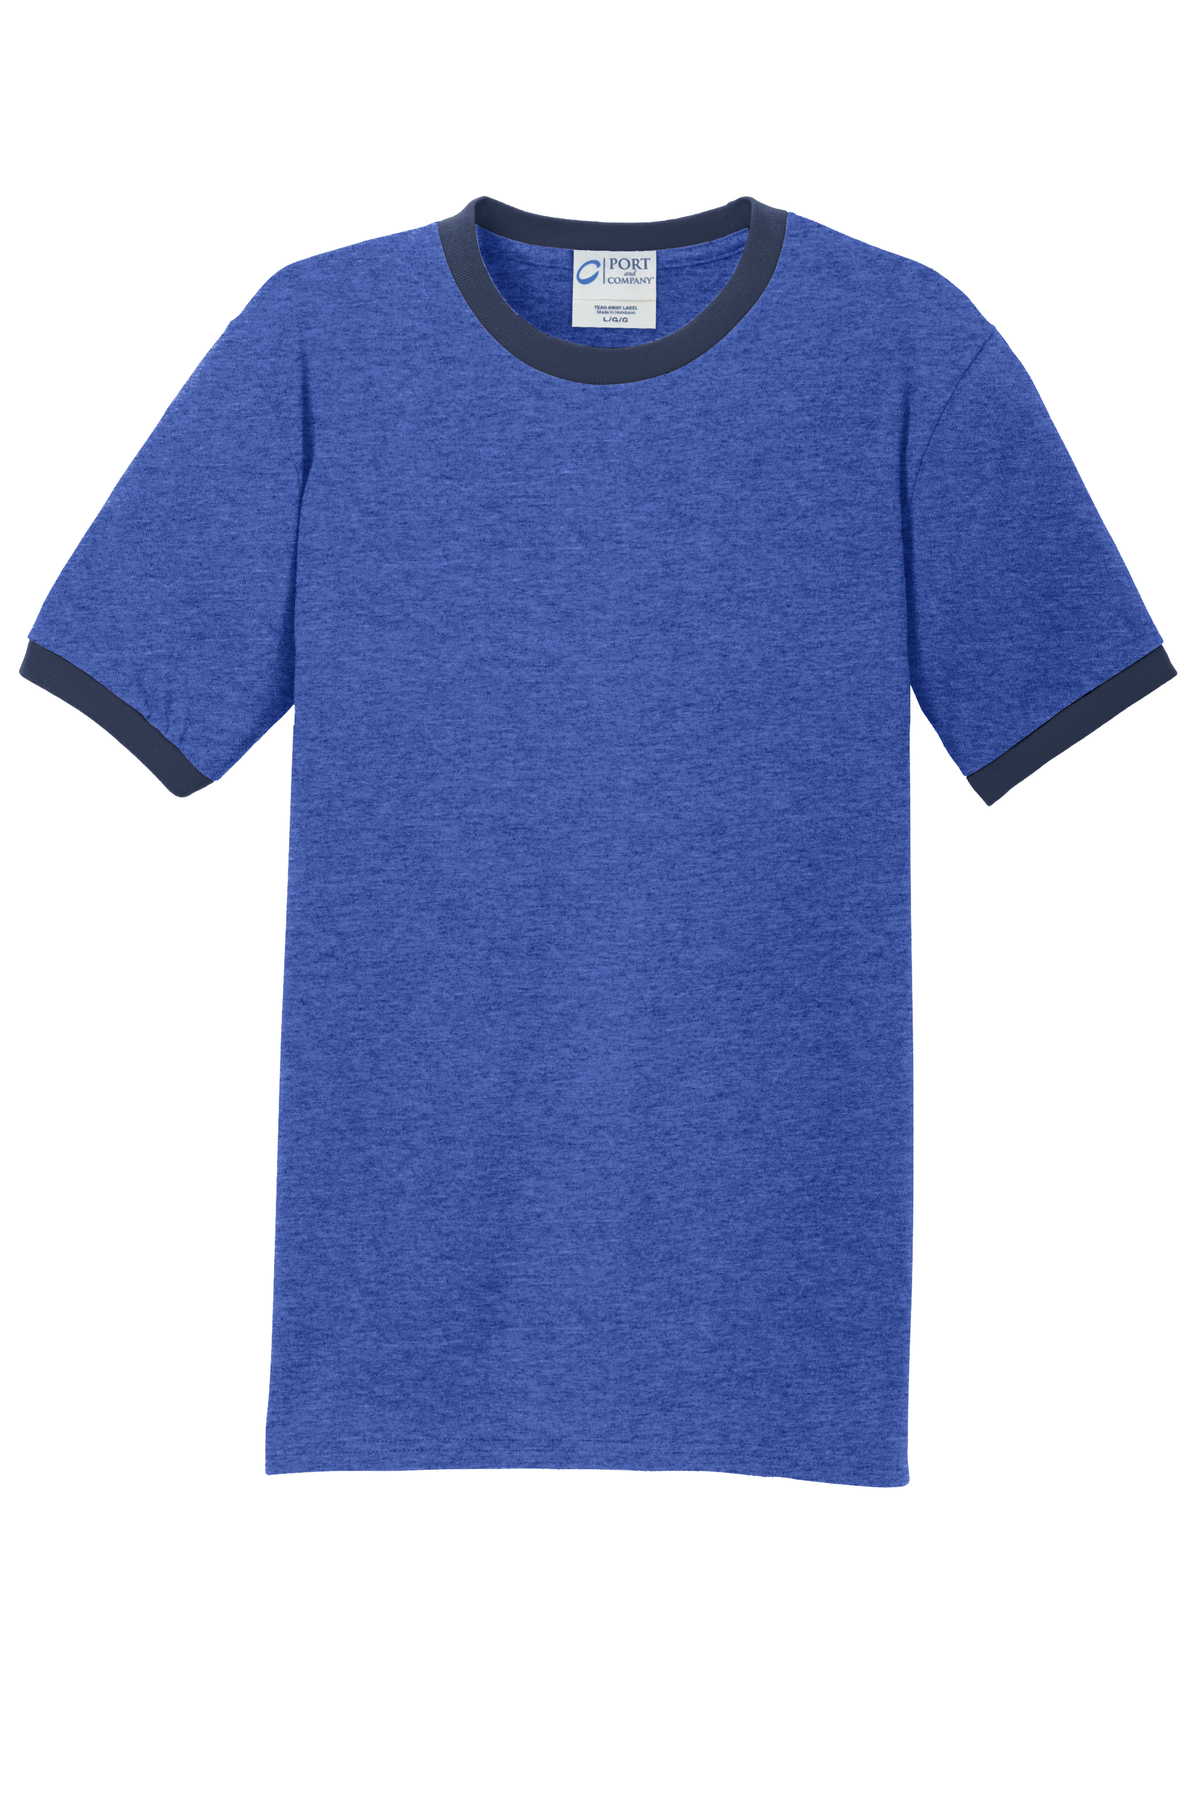 Classic Ringer T-Shirt - White/Blue